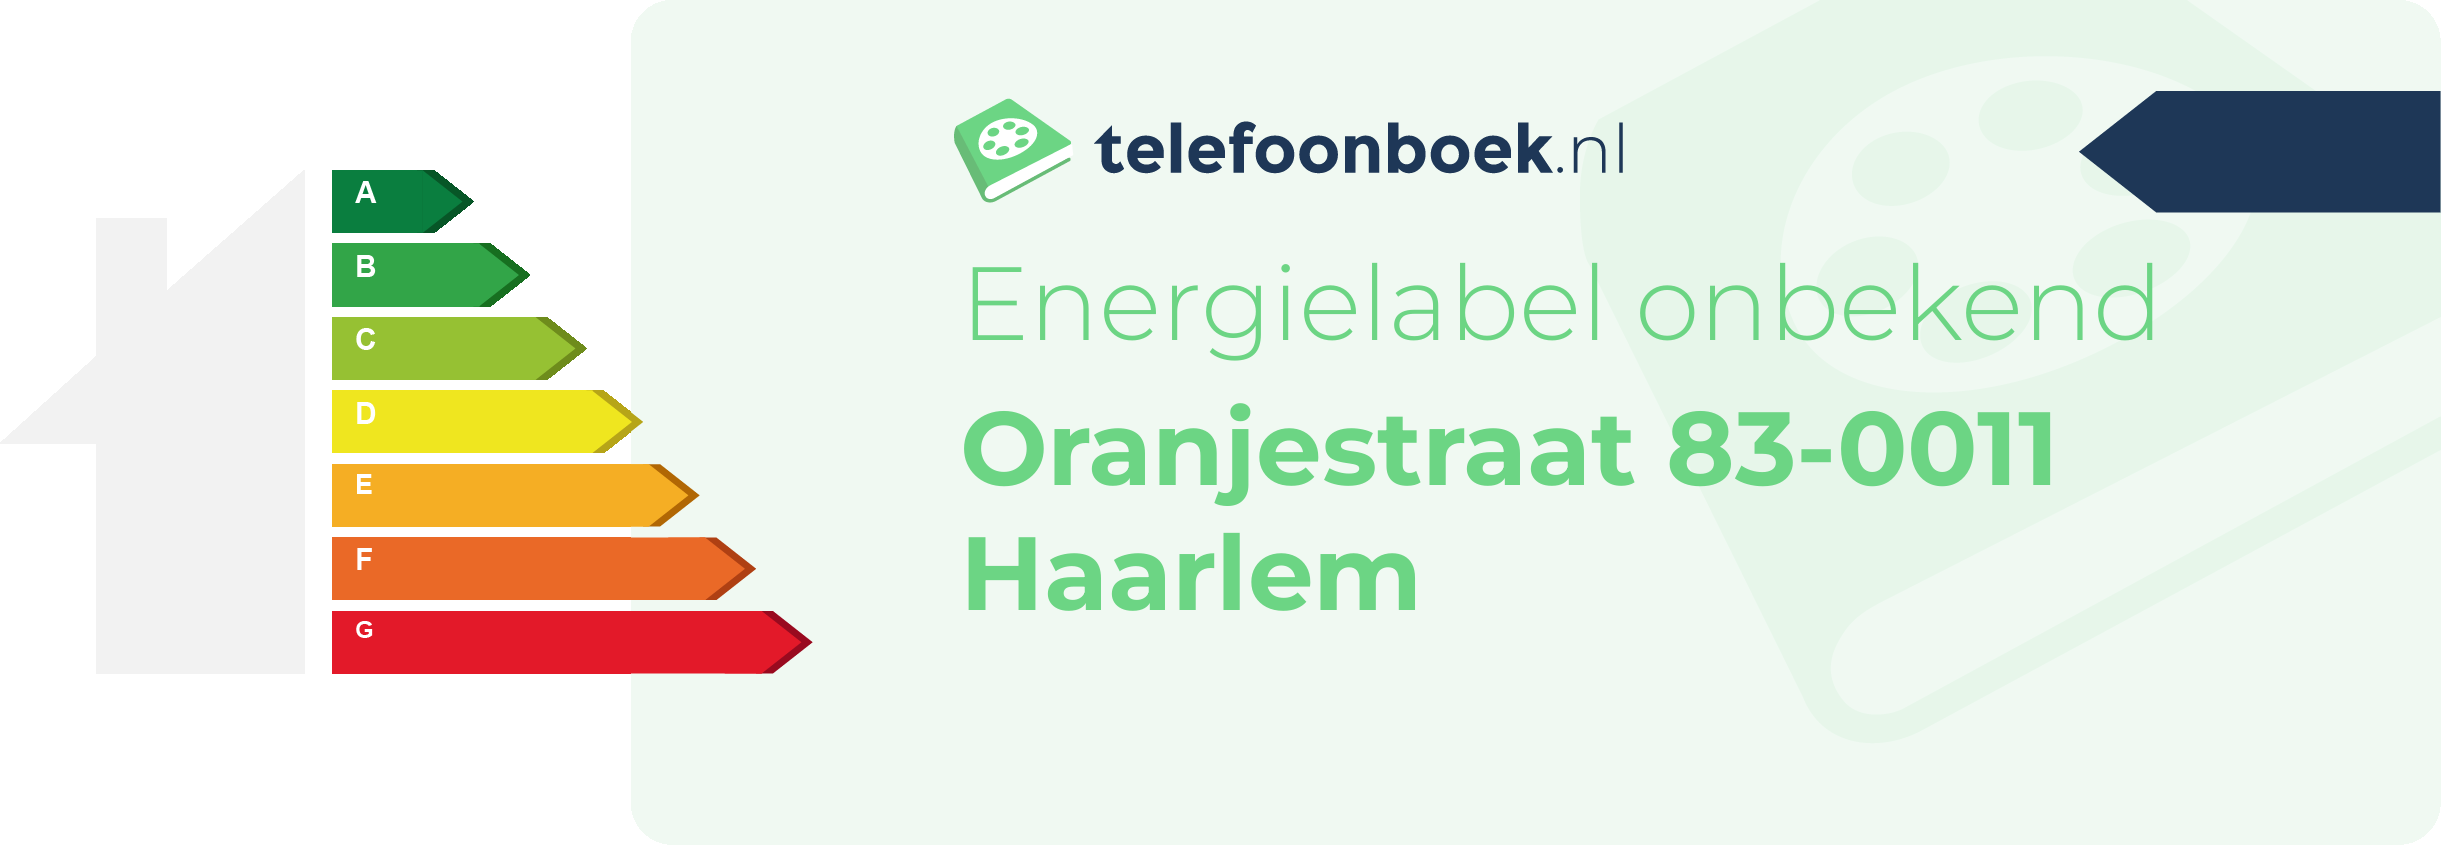 Energielabel Oranjestraat 83-0011 Haarlem